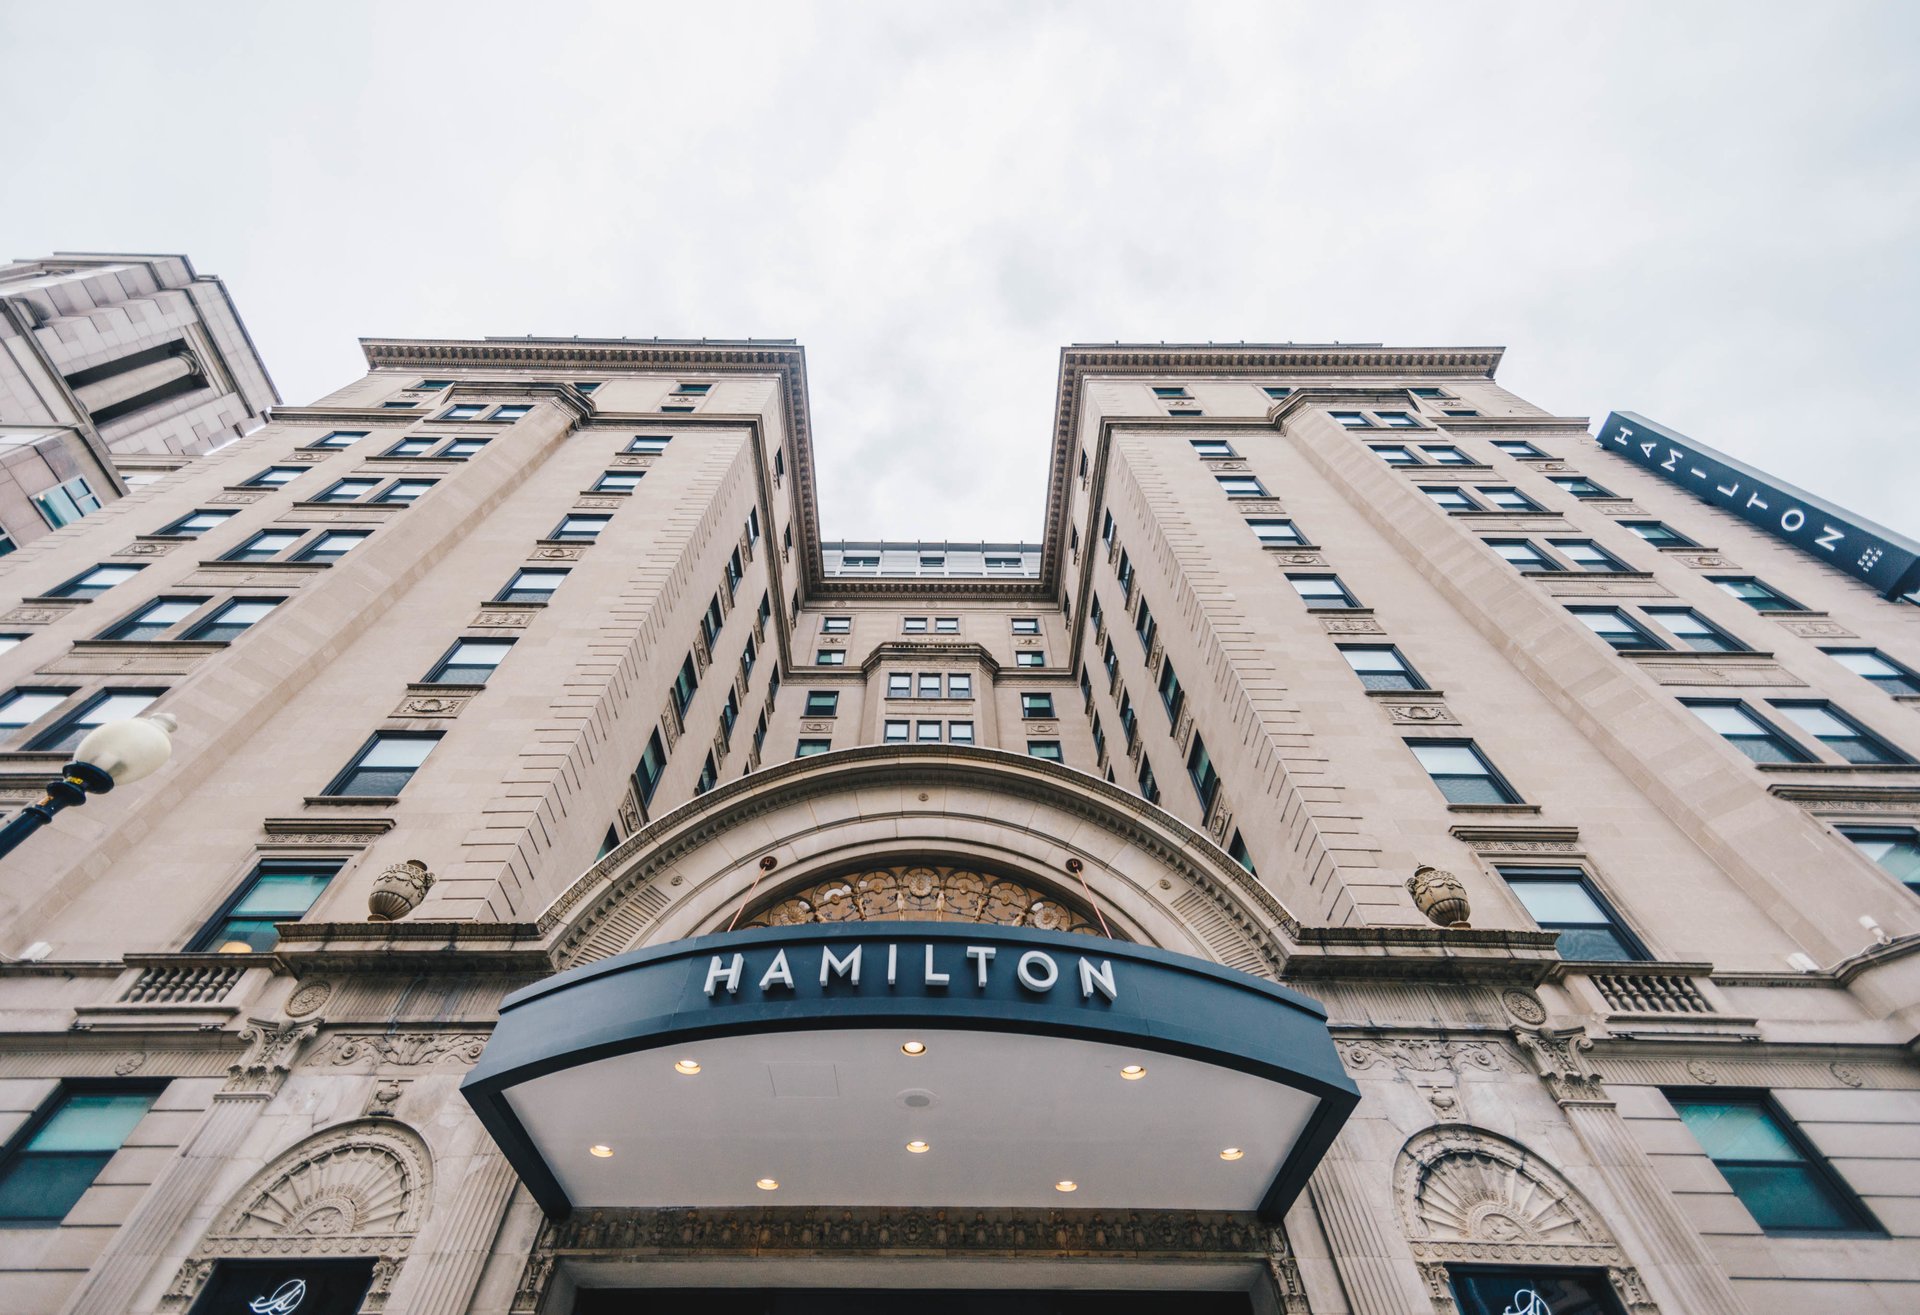 The Hamilton Hotel Washington, D.C.